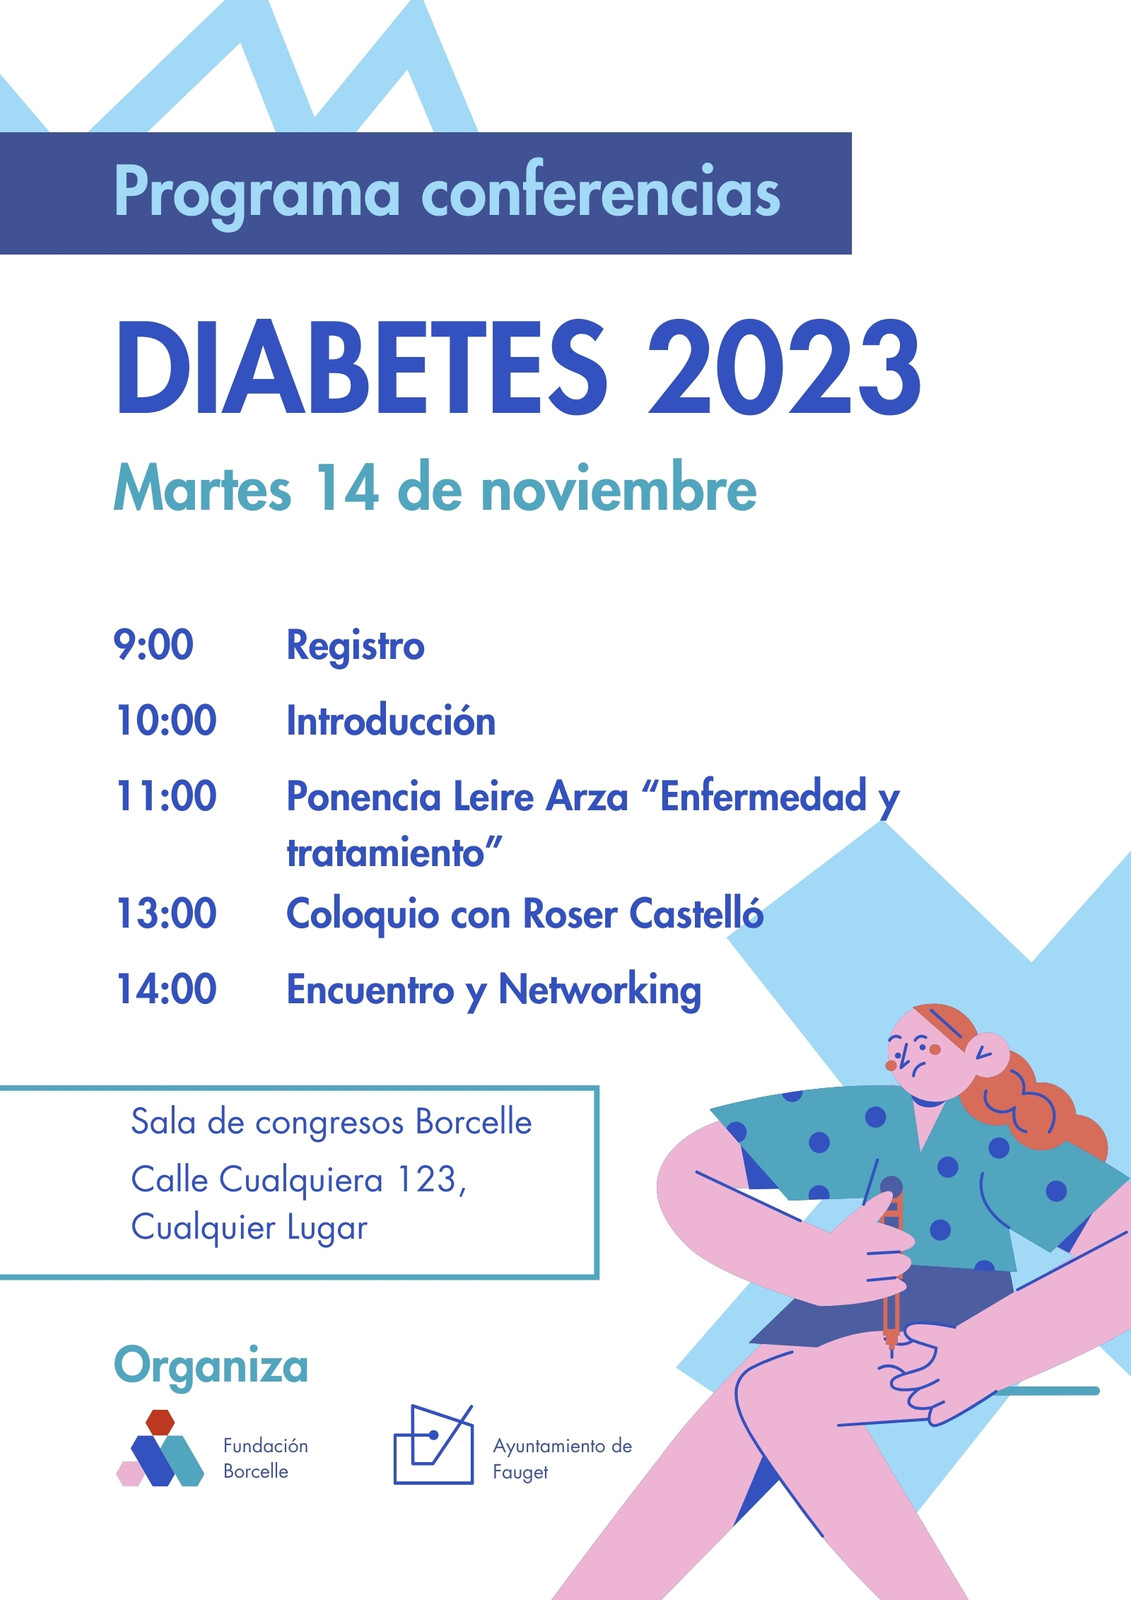 Programa conferencias diabetes ilustrado blanco azul